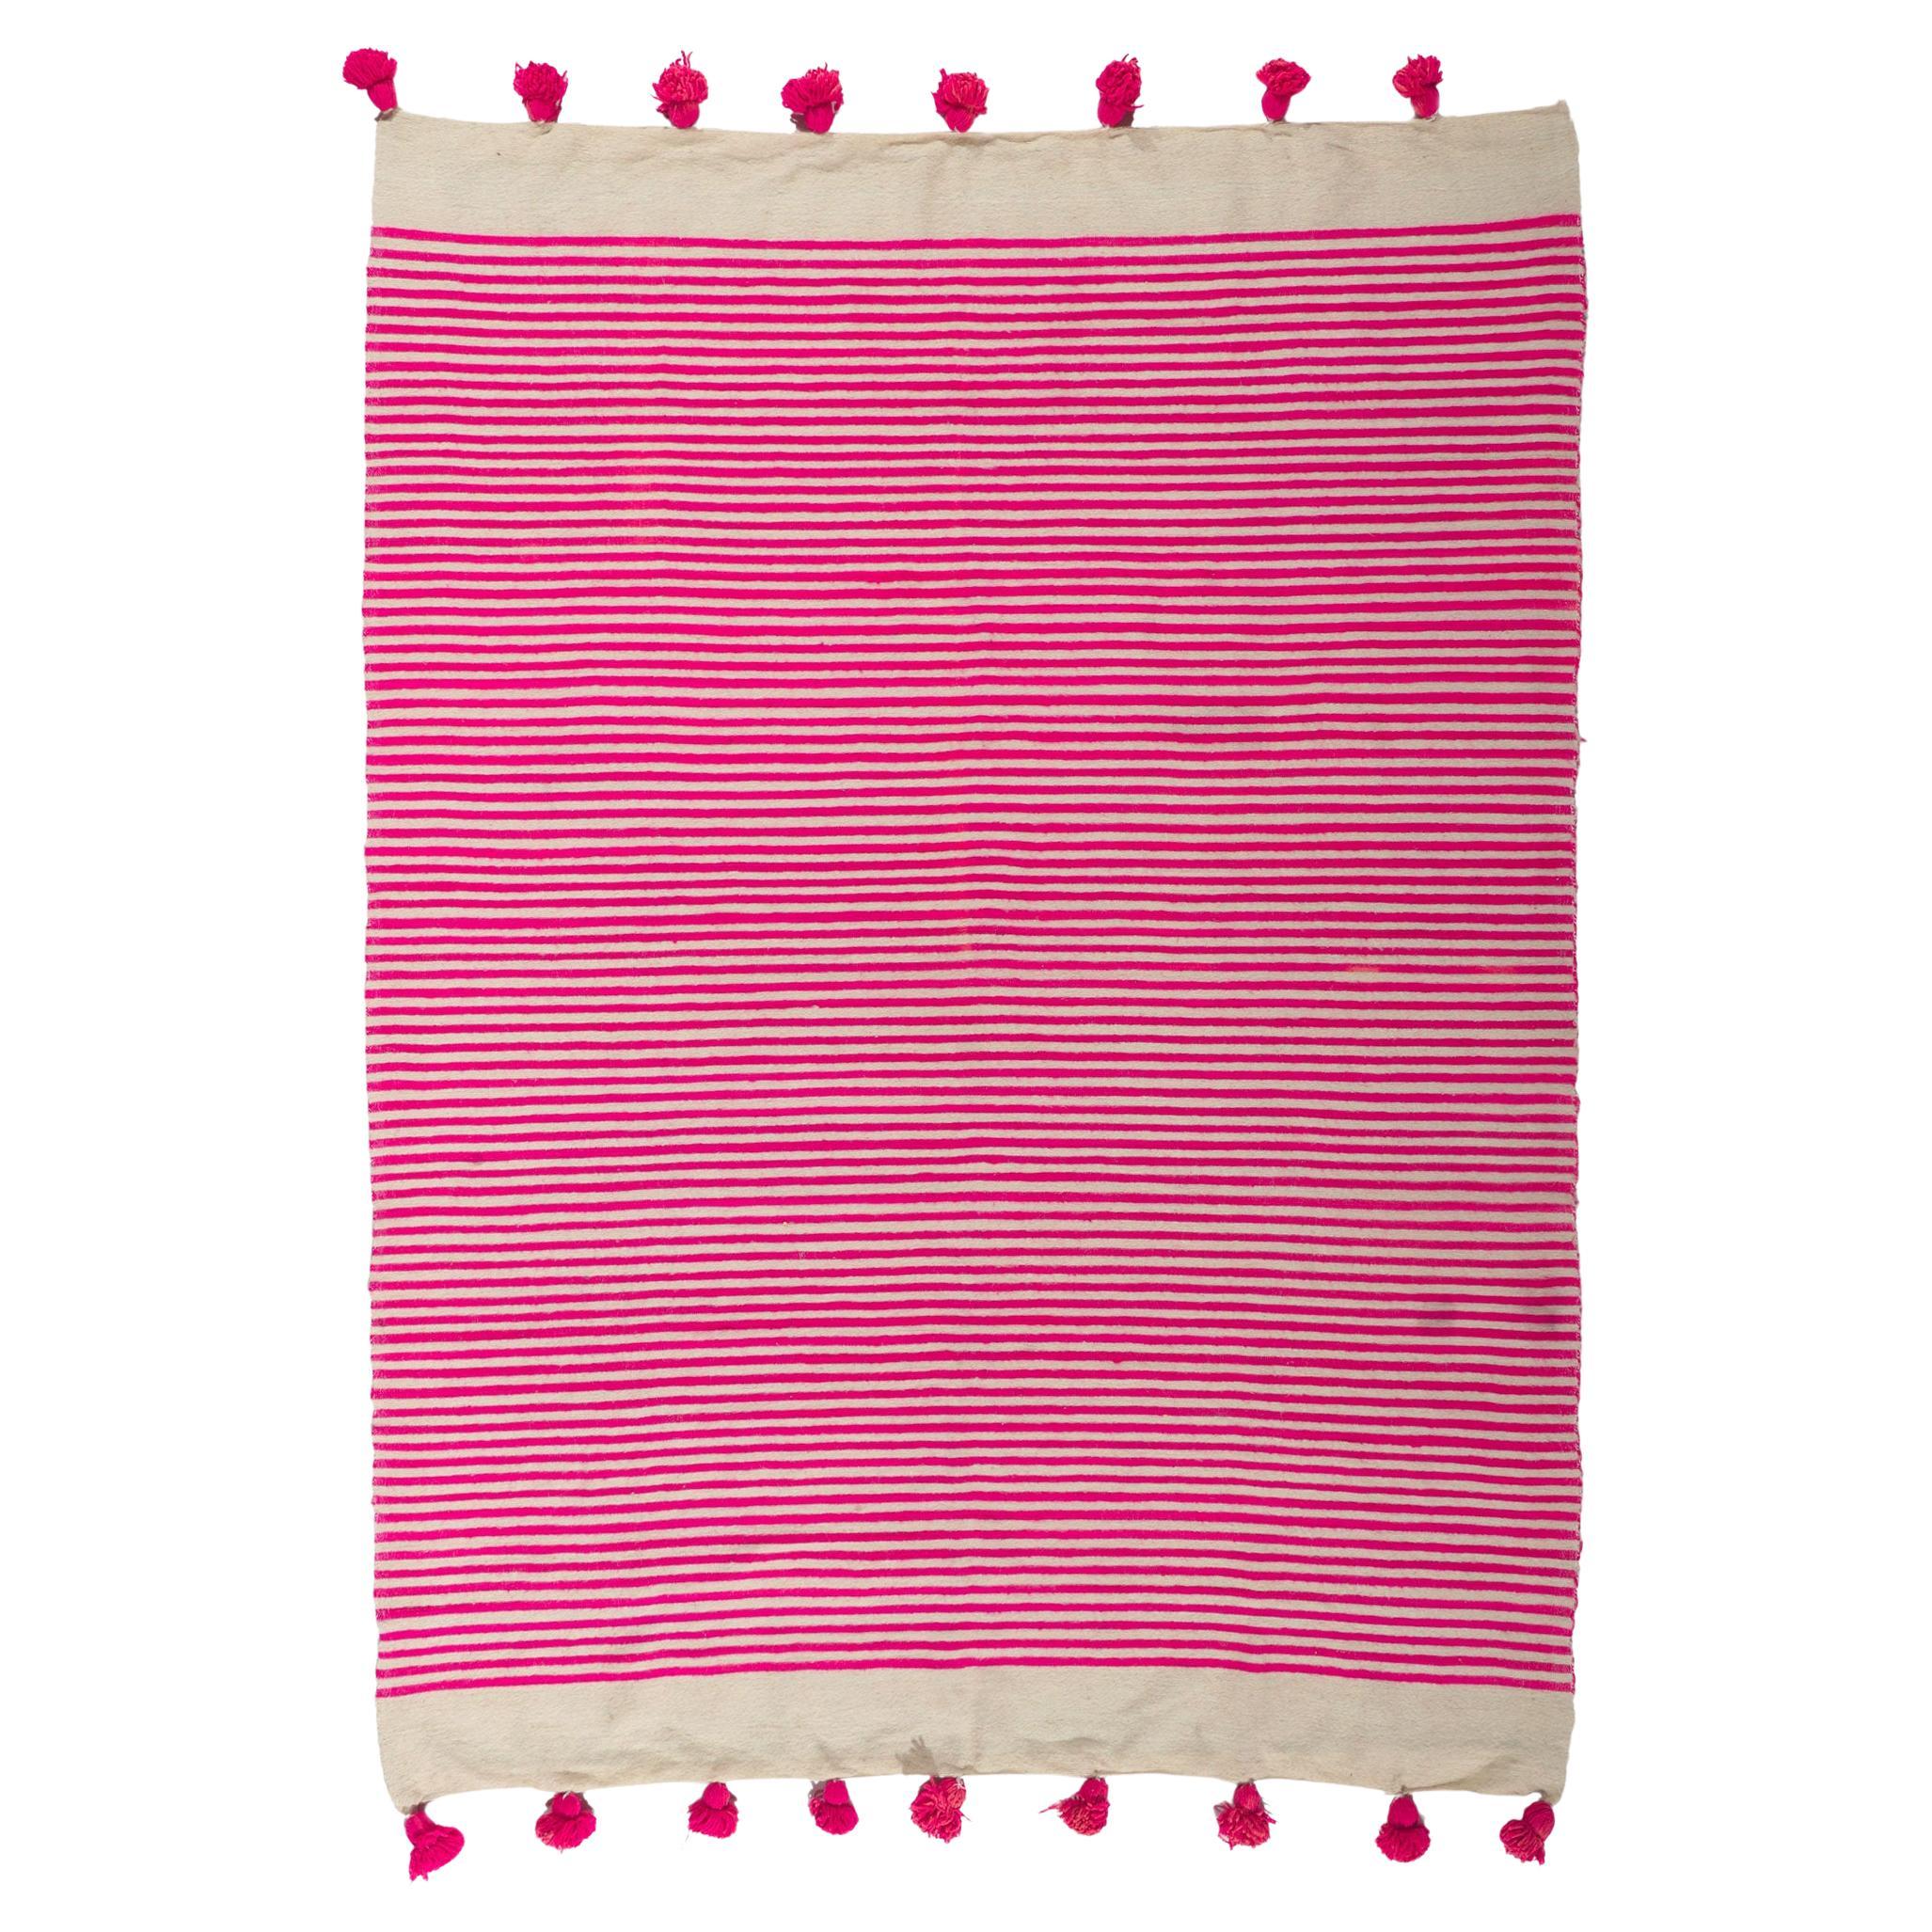 Vintage Berber Moroccan Kilim Rug with Hot Pink Stripes